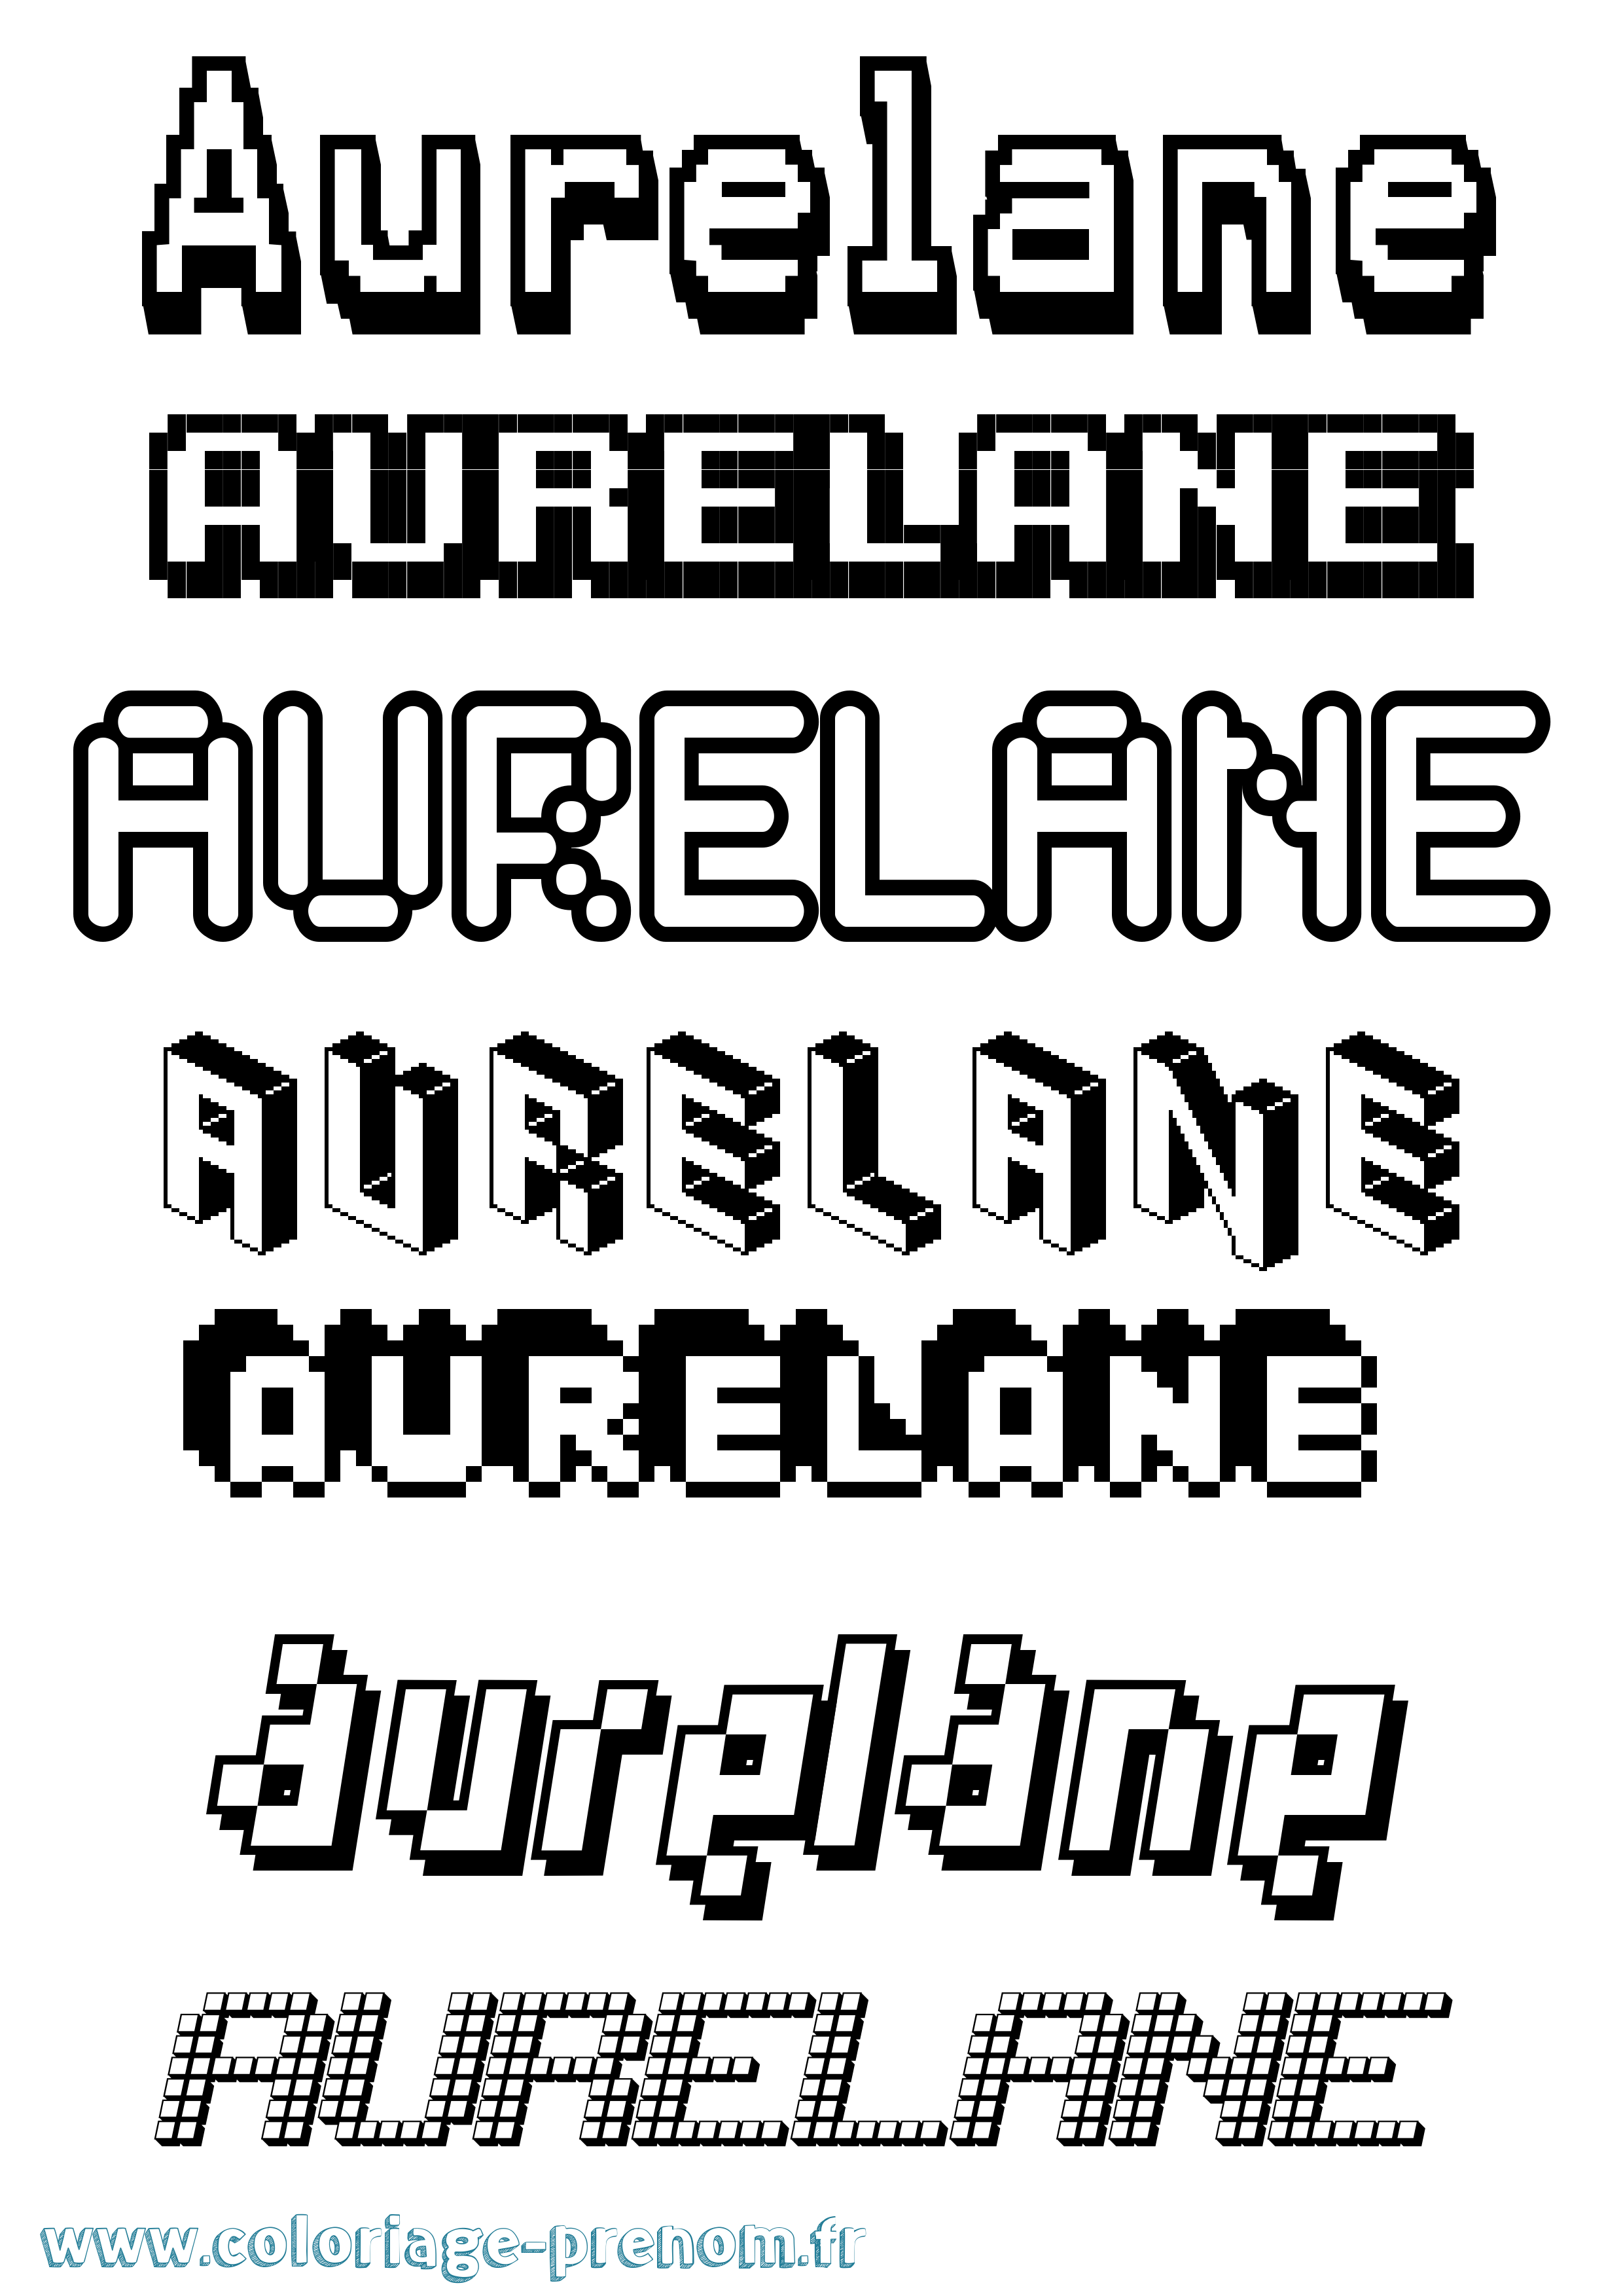 Coloriage prénom Aurelane Pixel